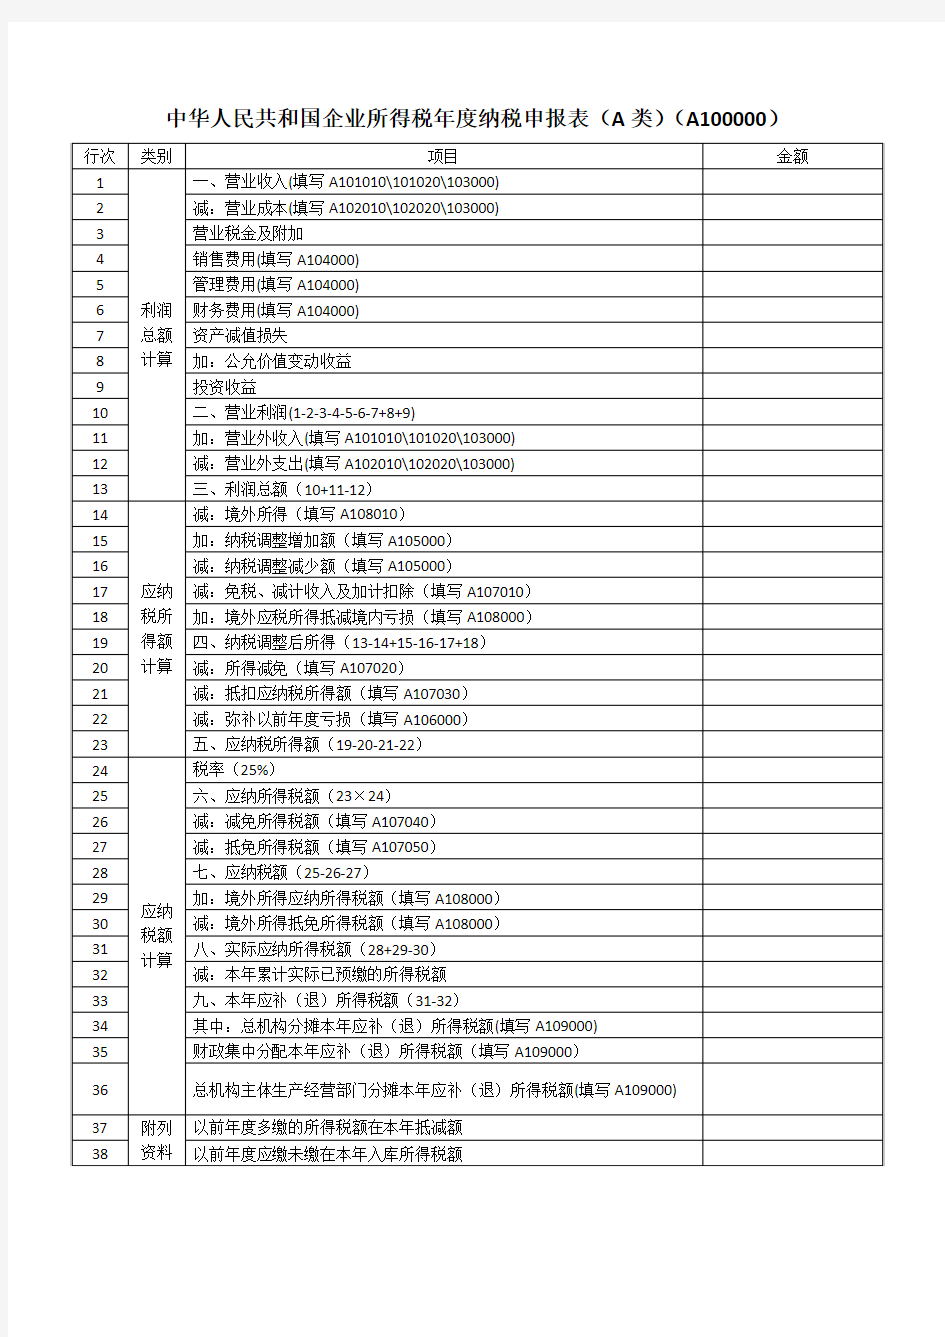 2015版《中华人民共和国企业所得税年度纳税申报表(A类)》(A100000)